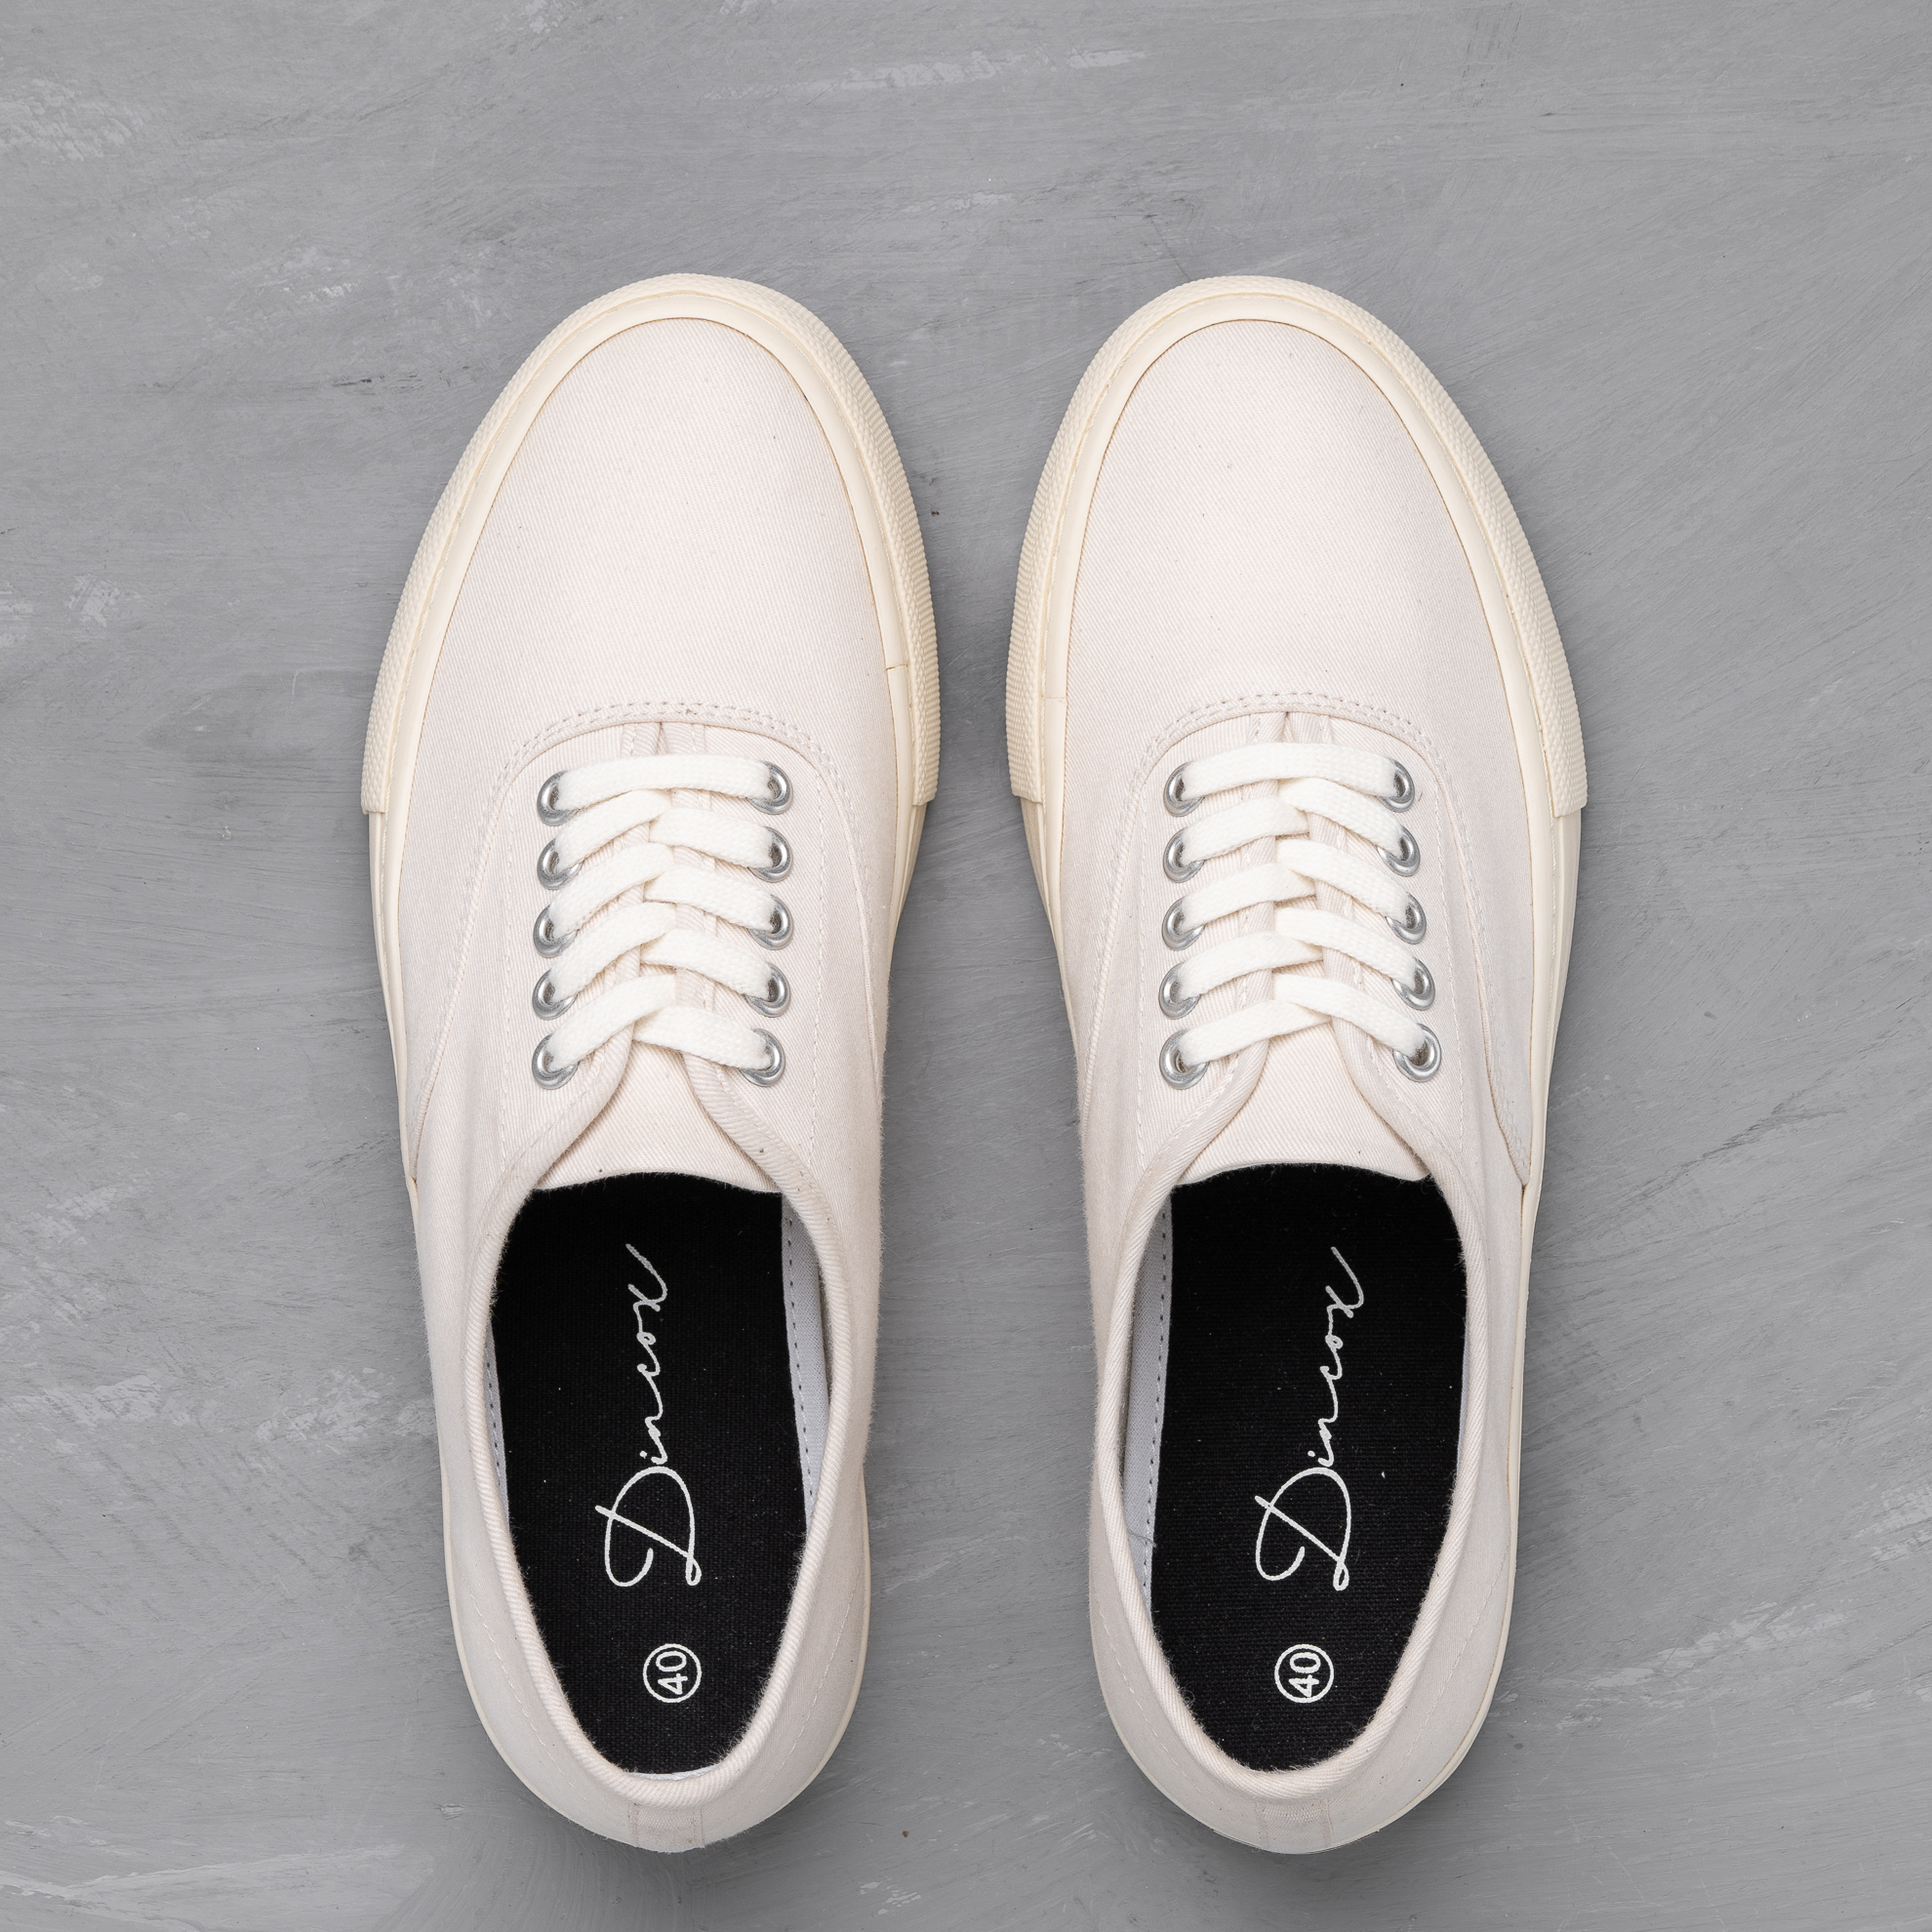 Giày Sneaker Nam Vải Canvas DINCOX E06 Off White Đơn Giản Tinh Tế Sang Trọng